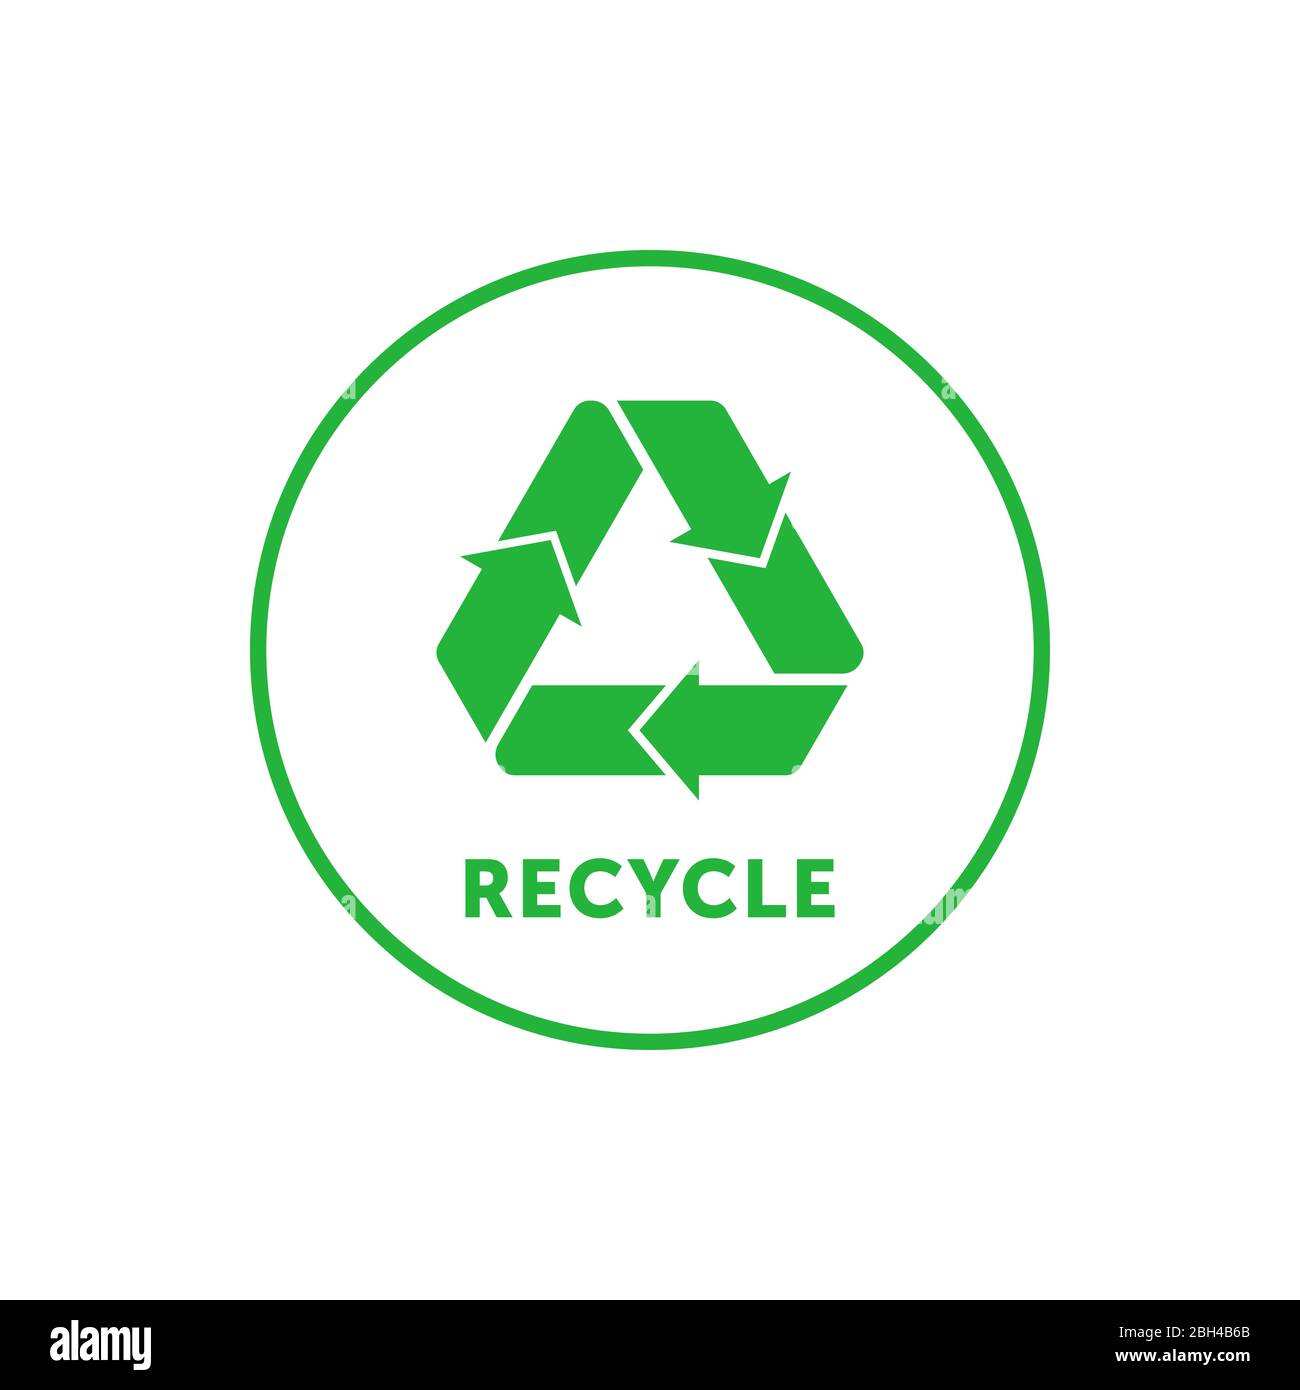 Recycling einfacher grüner runder Aufkleber mit Mobius-Streifen, Band oder Schlaufe. Design-Element für Verpackungsdesign und Werbematerial. Vektor Stock Vektor